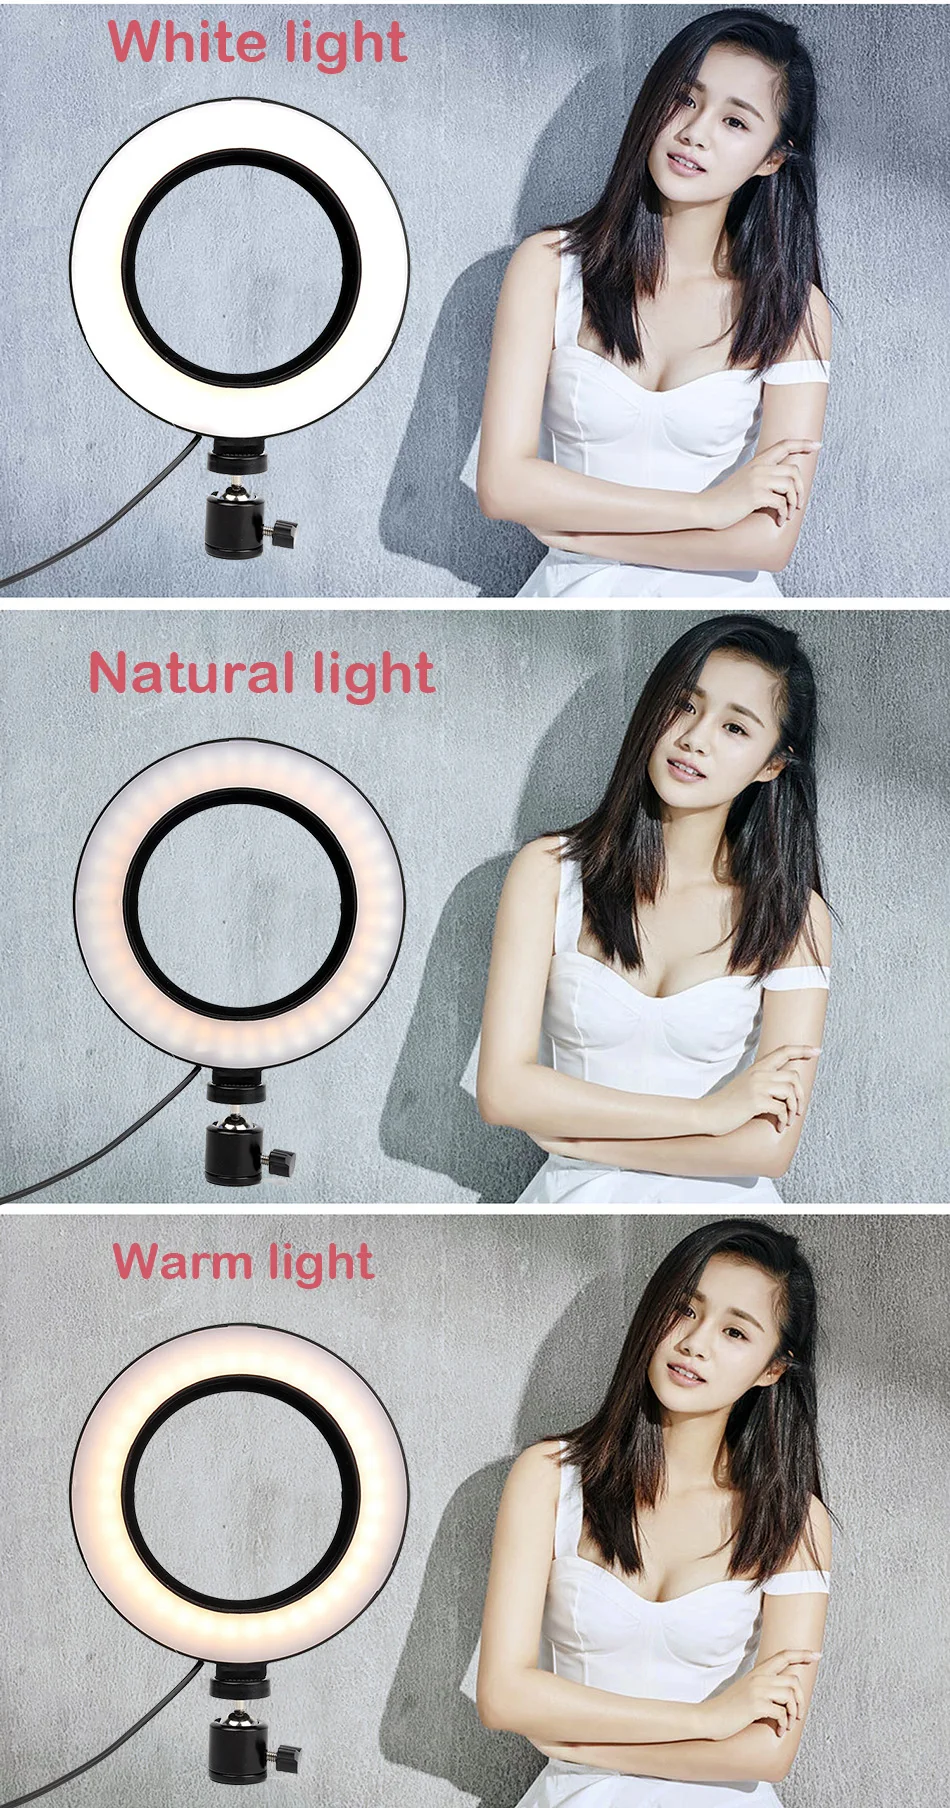 6 ''16 см кольцевой светодиодный светильник с регулируемой яркостью двухцветный 3200 K/5600 K& студийный Трипод кольцевой светильник для макияжа фотографии селфи светильник